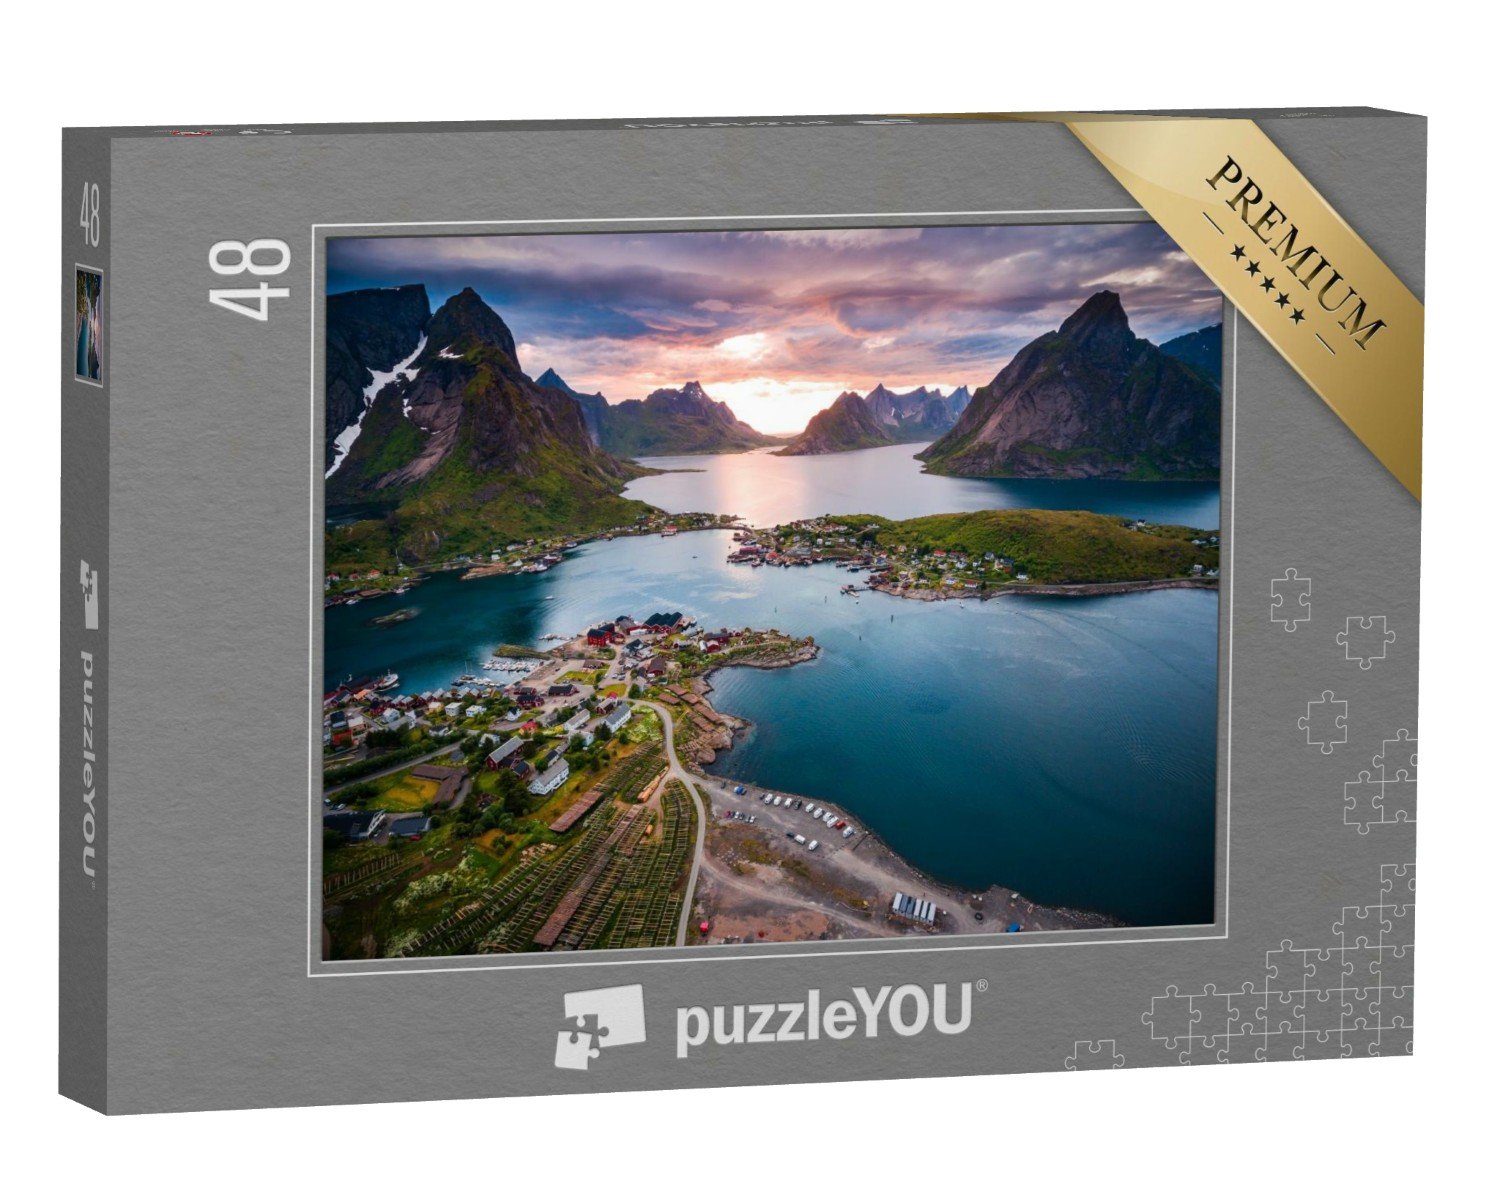 puzzleYOU Puzzle Unverwechselbare Landschaft der 48 Lofoten Lofoten, Norwegen, puzzleYOU-Kollektionen Puzzleteile